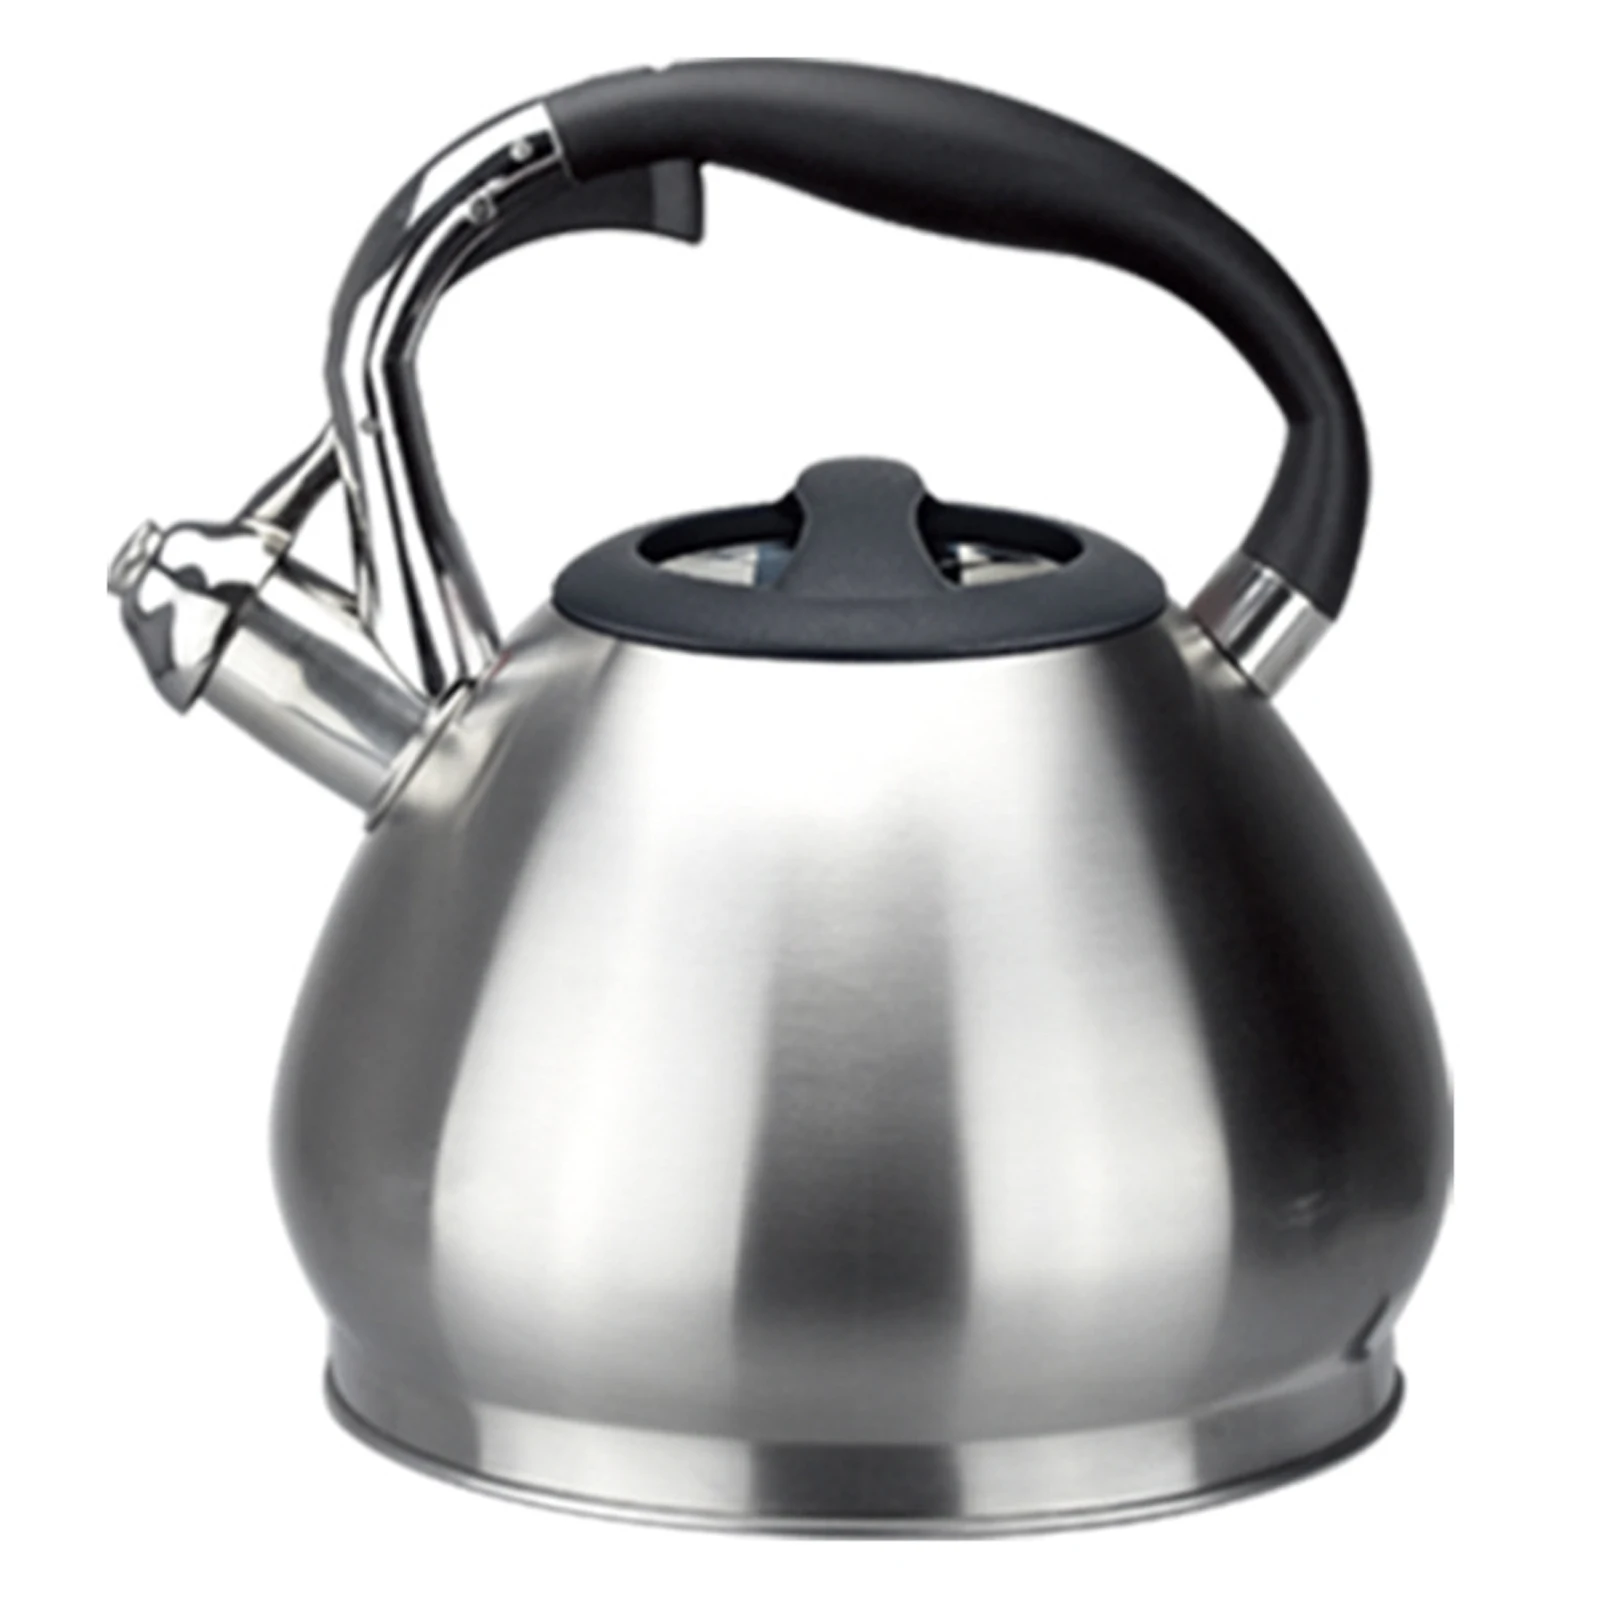 

Чайник для закипания чая, плита, индукционная плита, нержавеющая сталь, чайник для горячей воды, кофе, современный кемпинг, громкий свист